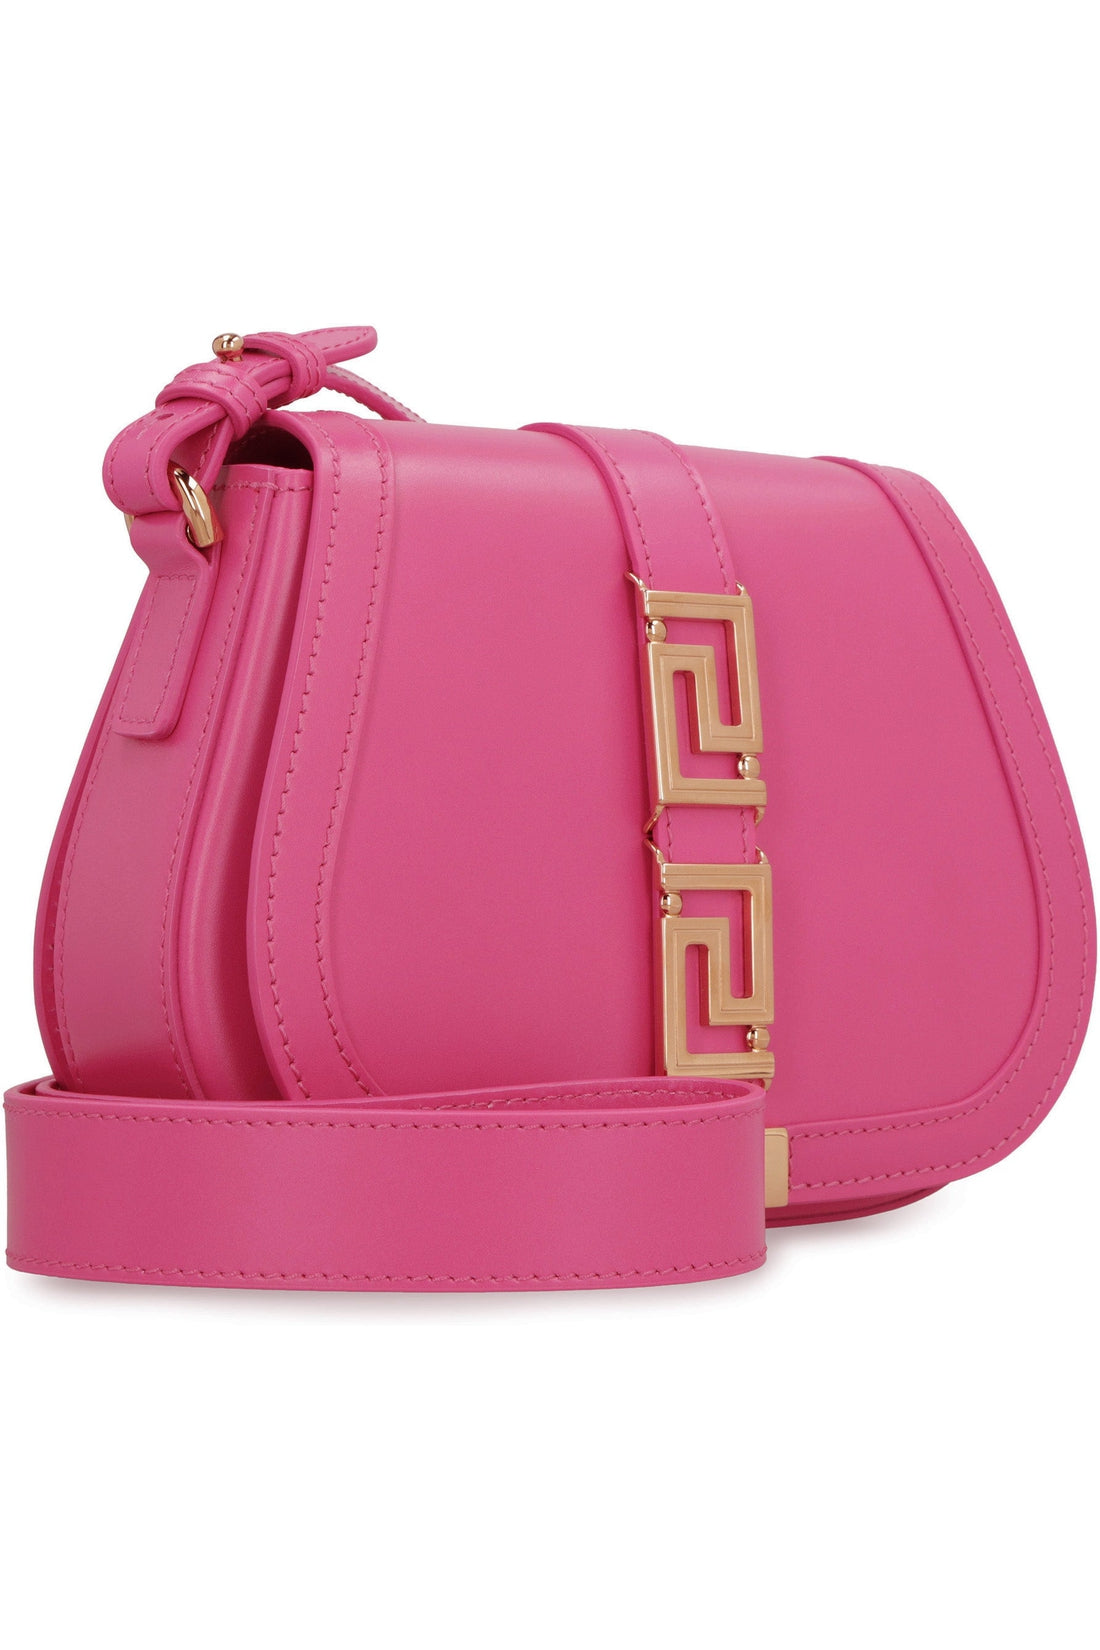 Versace-OUTLET-SALE-Greca Goddess leather shoulder bag-ARCHIVIST